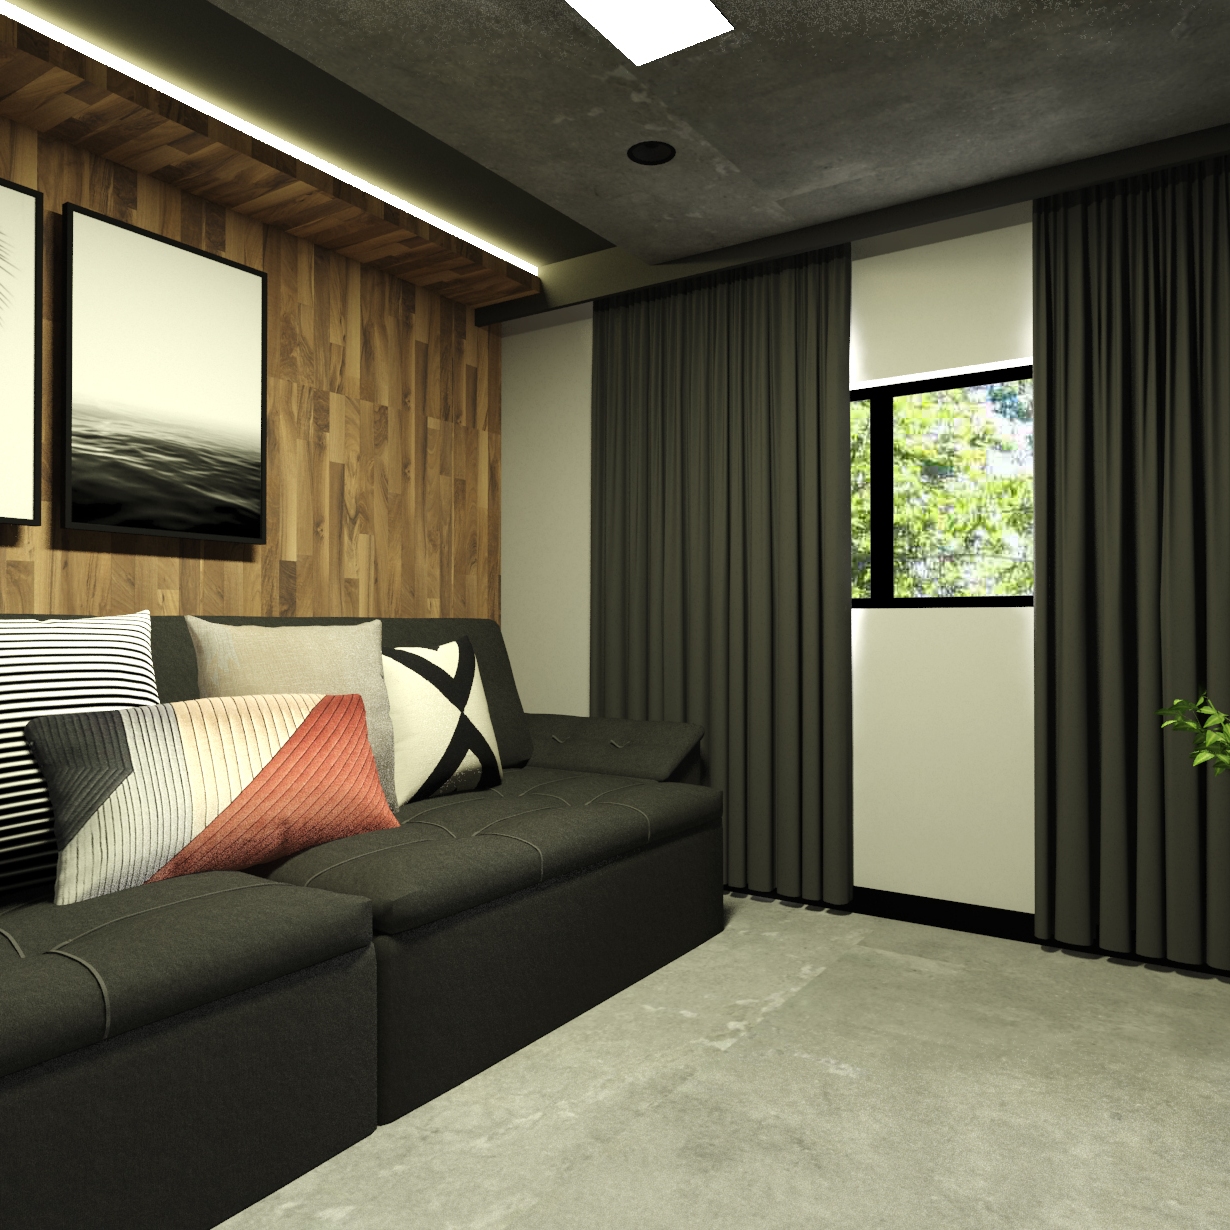 Projeto Bragi Home Theater - sala de tv moderna - projeto de design de interiores em curitiba -Imagem 01